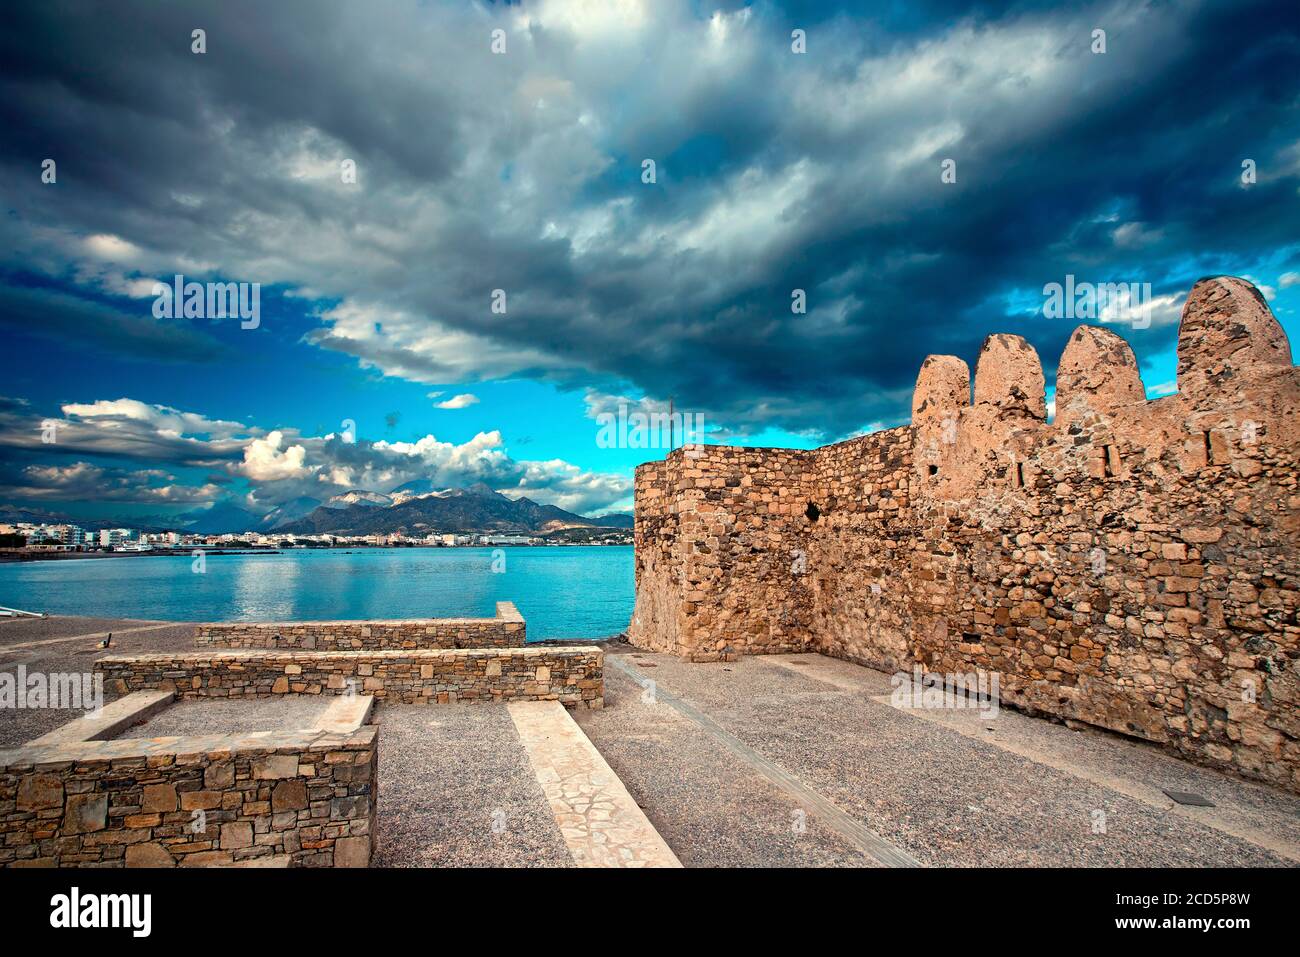 Teilansicht der Stadt Ierapetra und ihrer Burg bekannt als "Kales". Lassithi Präfektur, Kreta Insel, Griechenland. Stockfoto